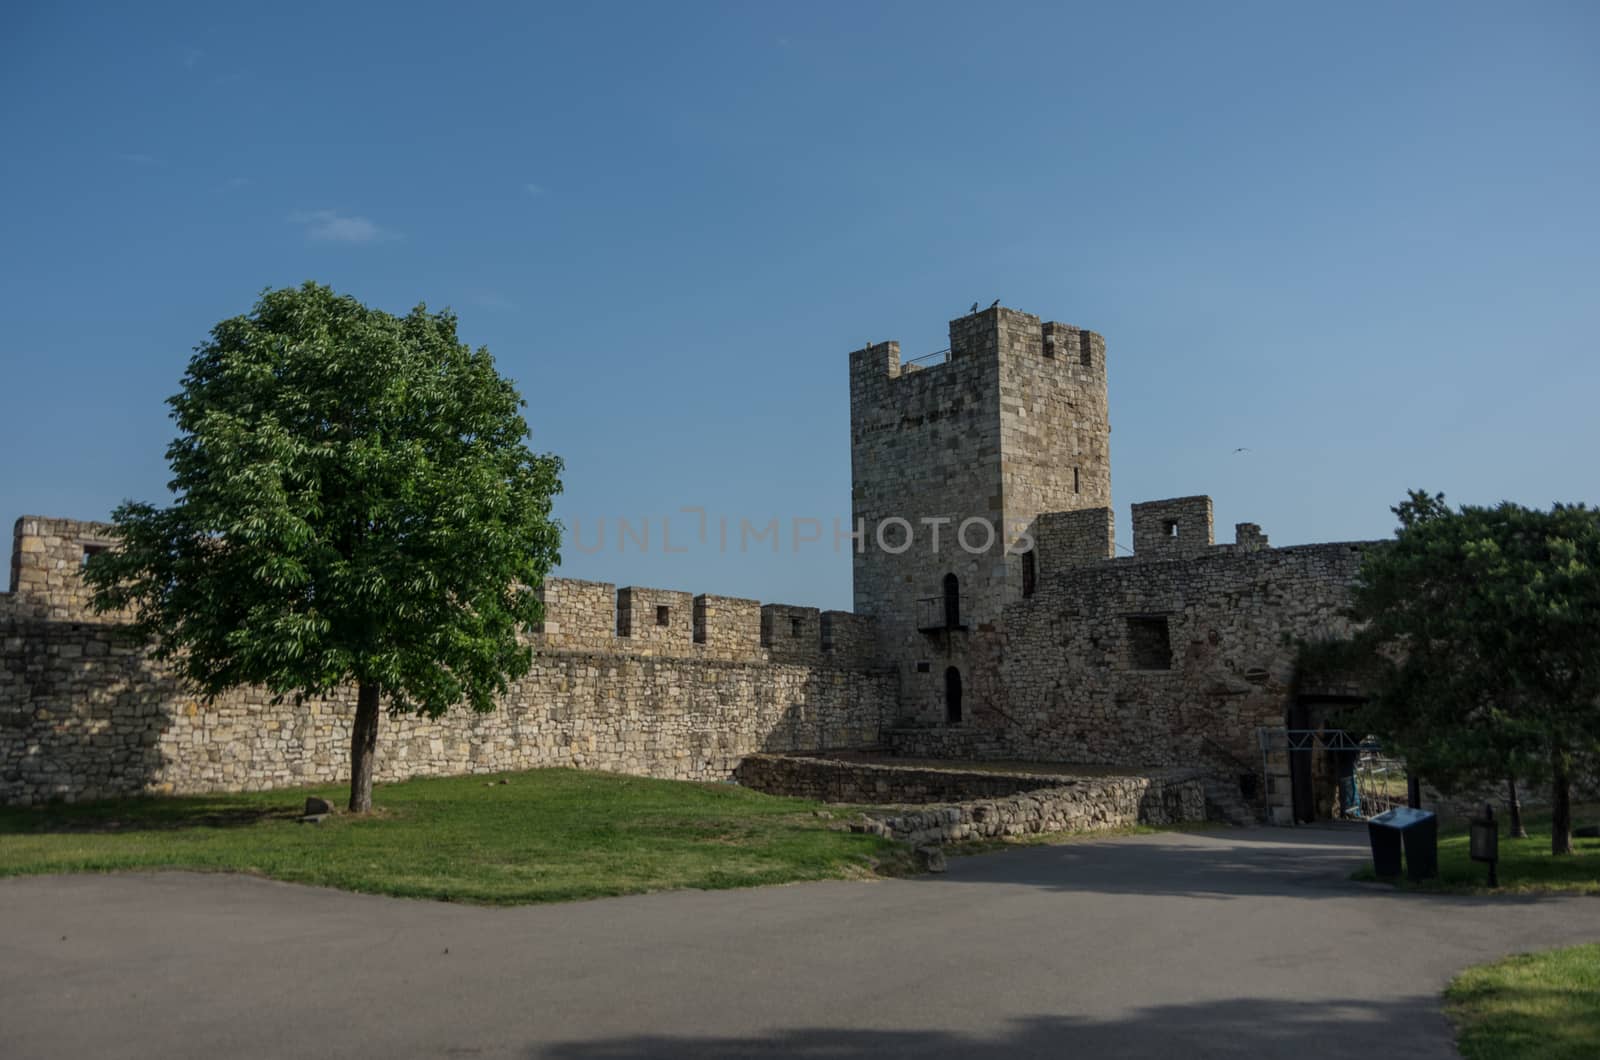 Despot Stefan tower in Kalemegdan fortress in Belgrade, Serbia